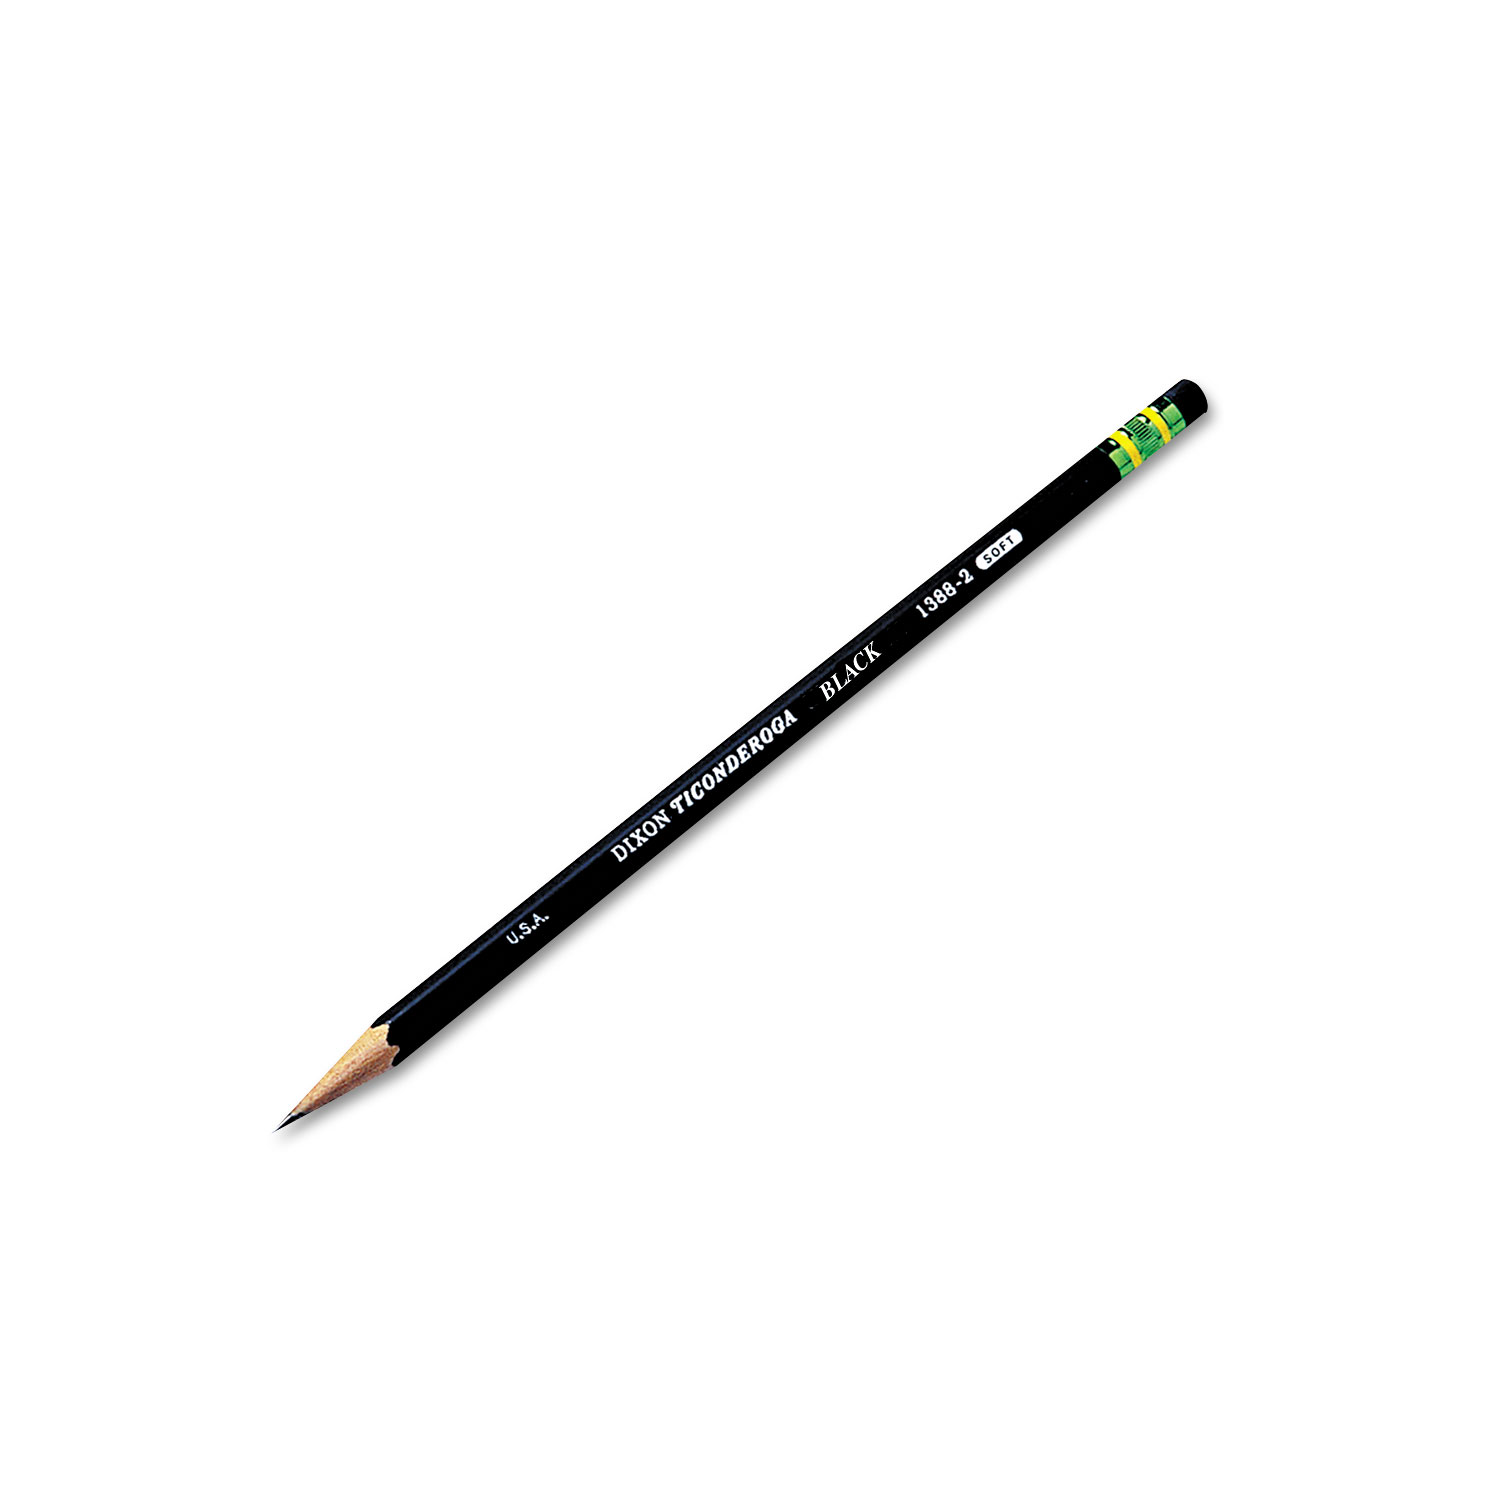 Dixon Ticonderoga Pencils, F (#2.5), Black Lead, Yellow Barrel, Dozen, DIX13885